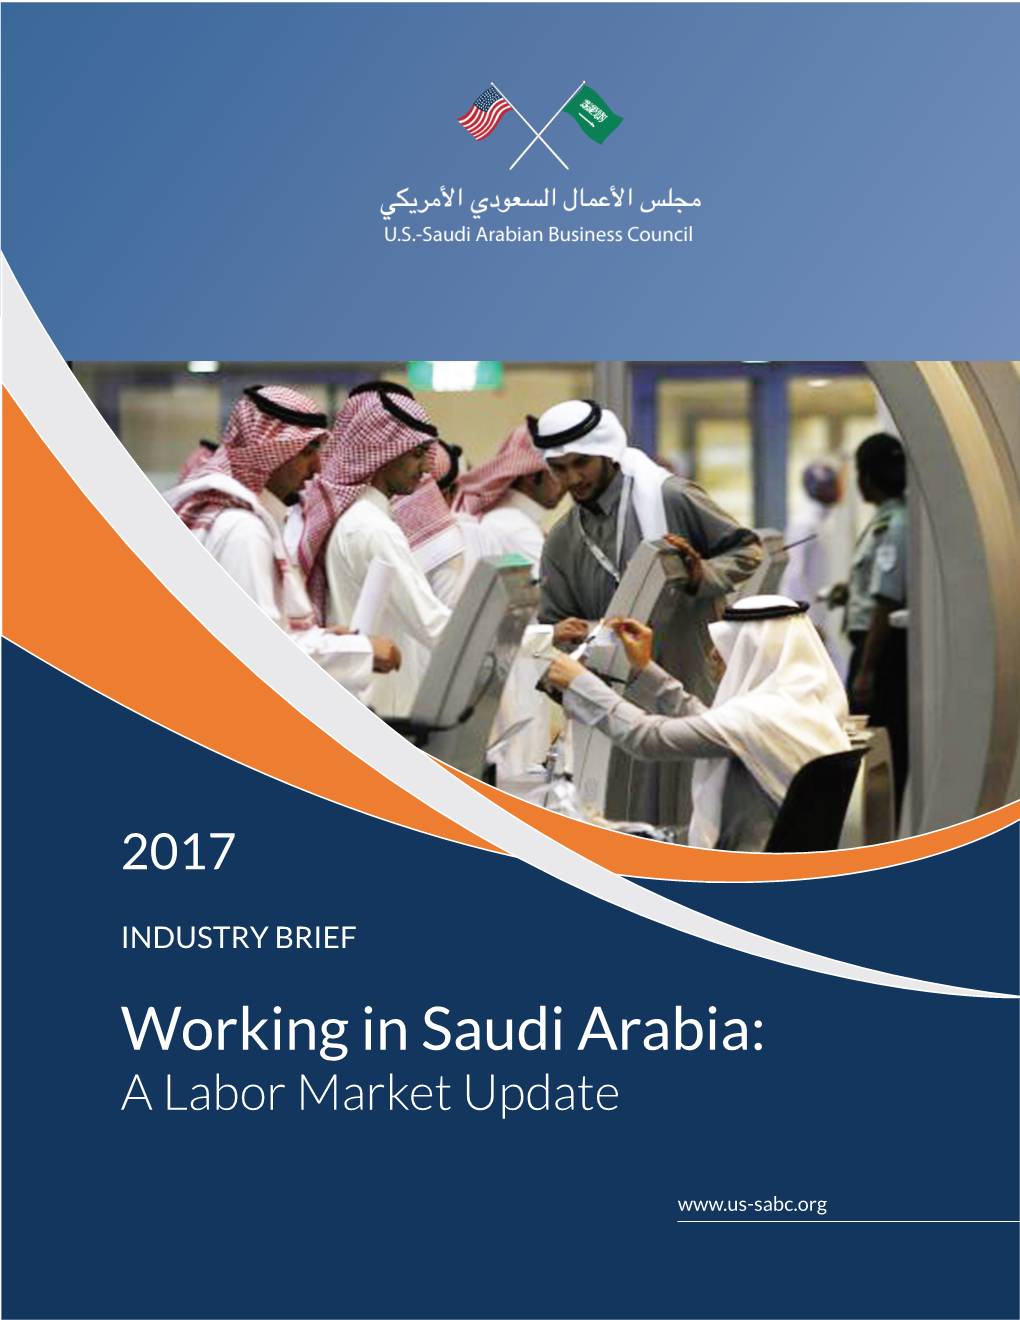 Working in Saudi Arabia: a Labor Market Update